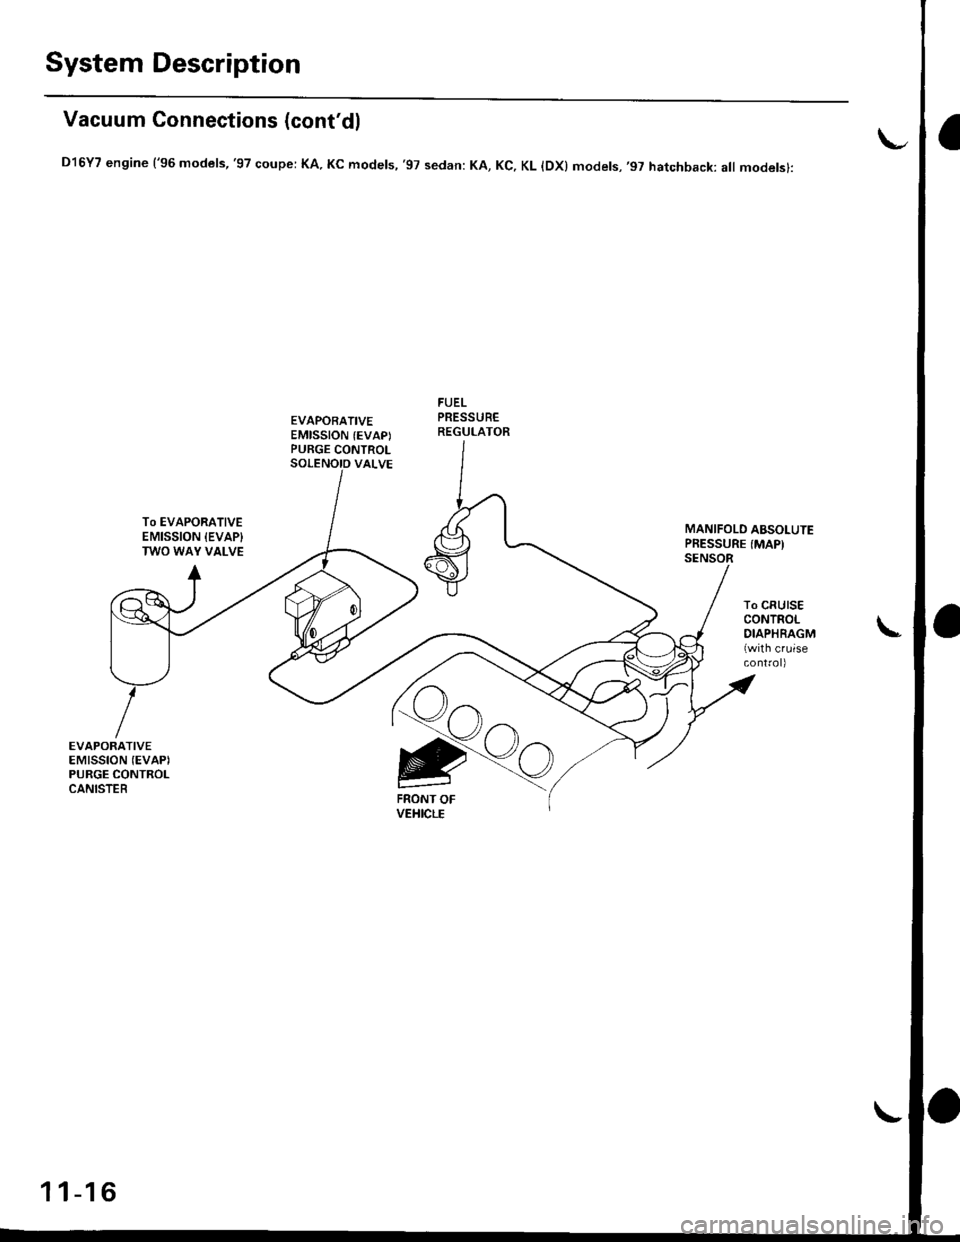 HONDA CIVIC 1997 6.G Workshop Manual System Description
Vacuum Connections (contdl
D16Y7 engine (96 models,97 coupe: KA. Kc models, 97 sedan: KA, Kc, KL lDx) models,97 hatchback: all modelsl:
EVAPORATIVEEMISSION (EVAPIPURGE CONTROL
